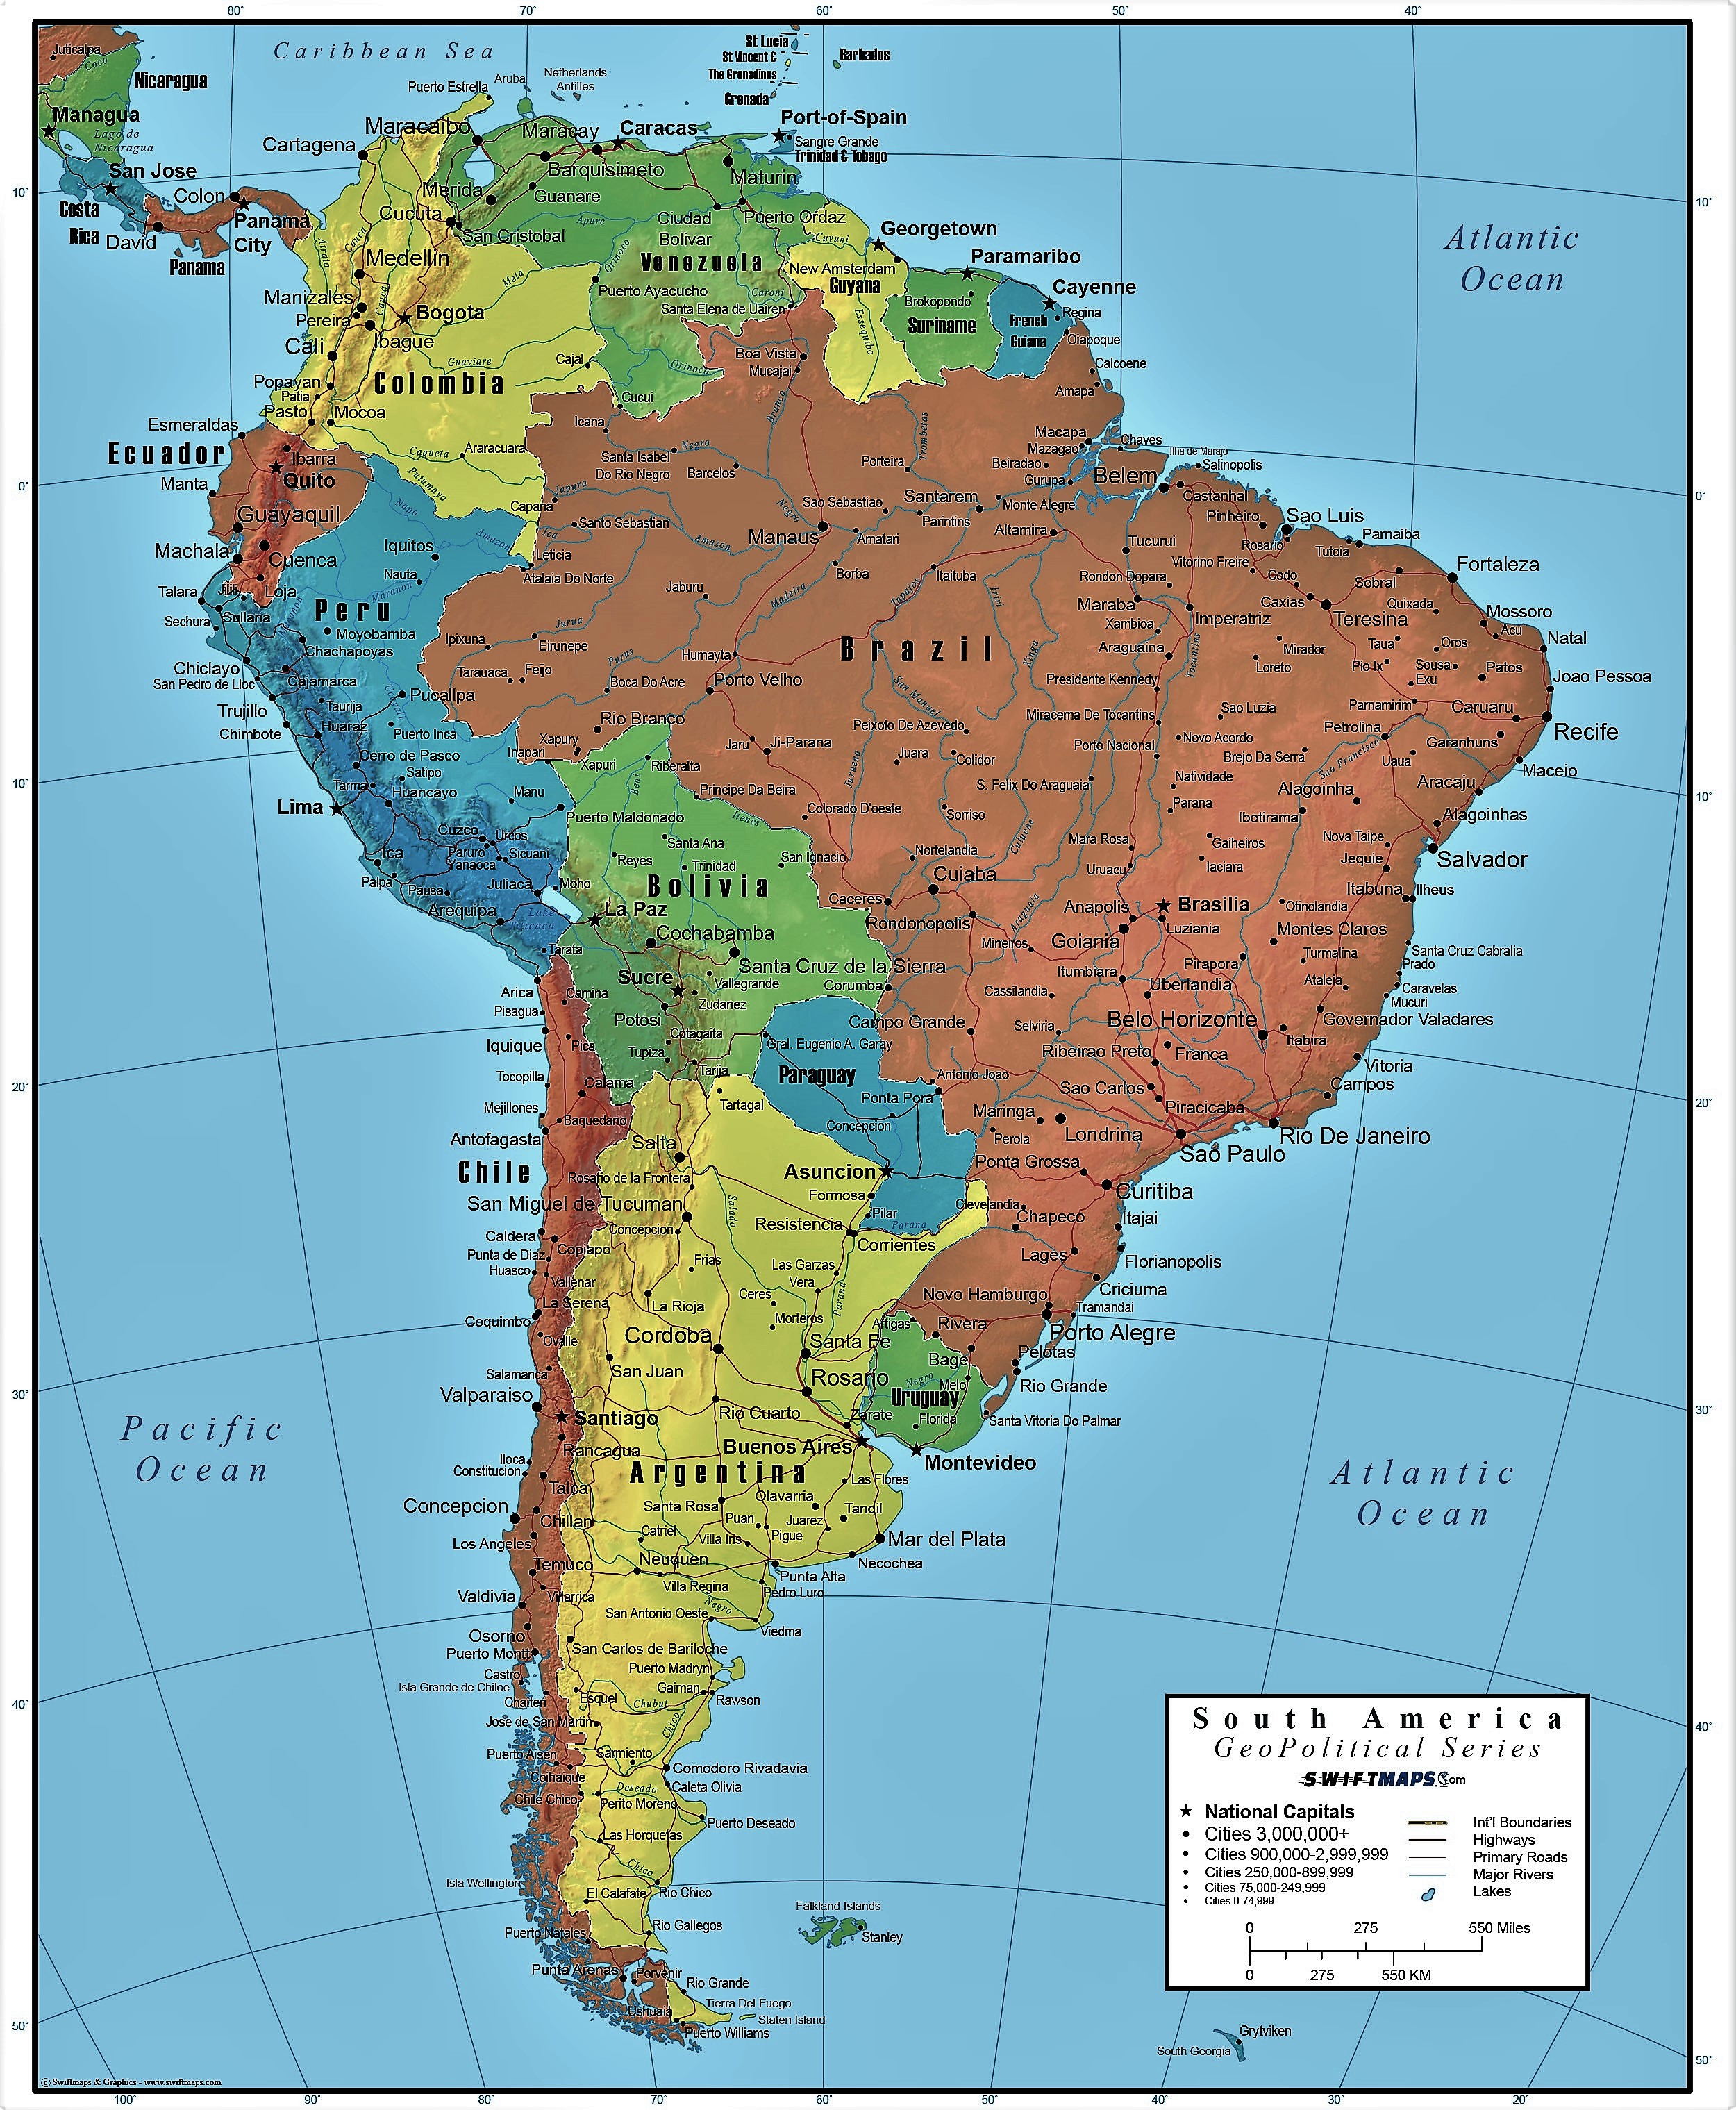 Mapamundi español  Mapas para Colombia y América Central de pared grandes